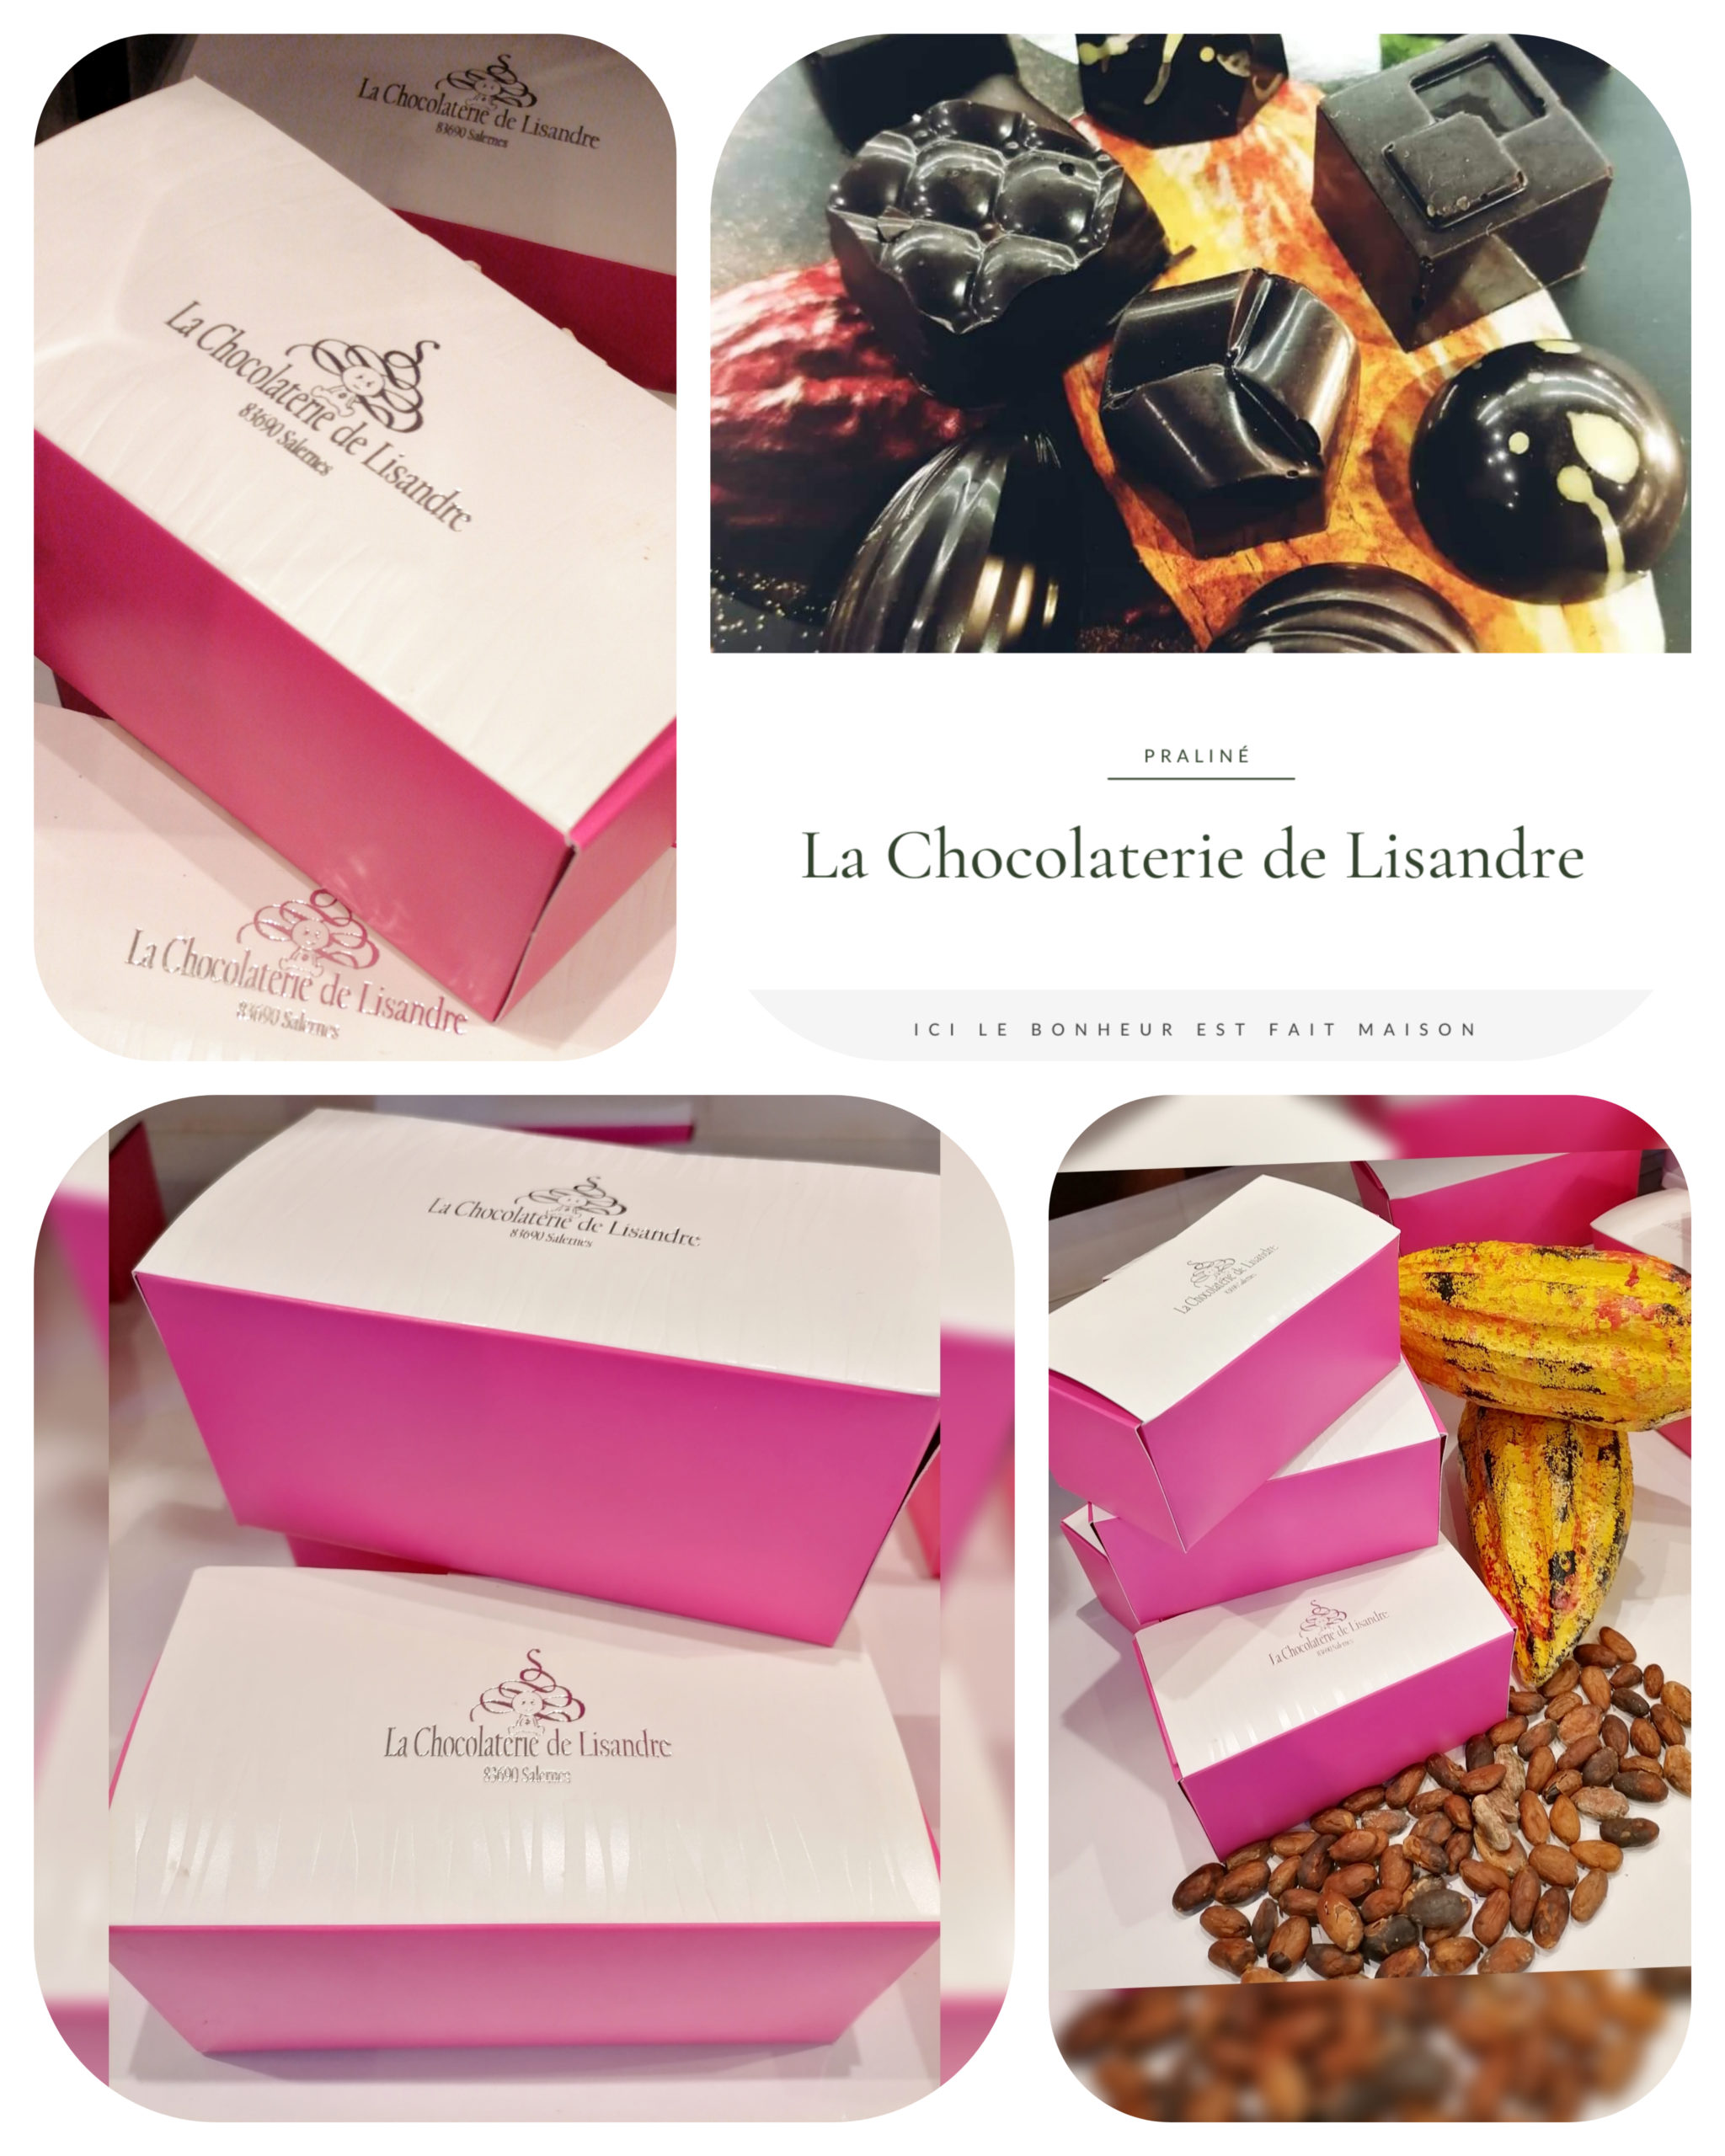 Ballotin Chocolat Noir et Chocolat au Lait - Atelier du confiseur